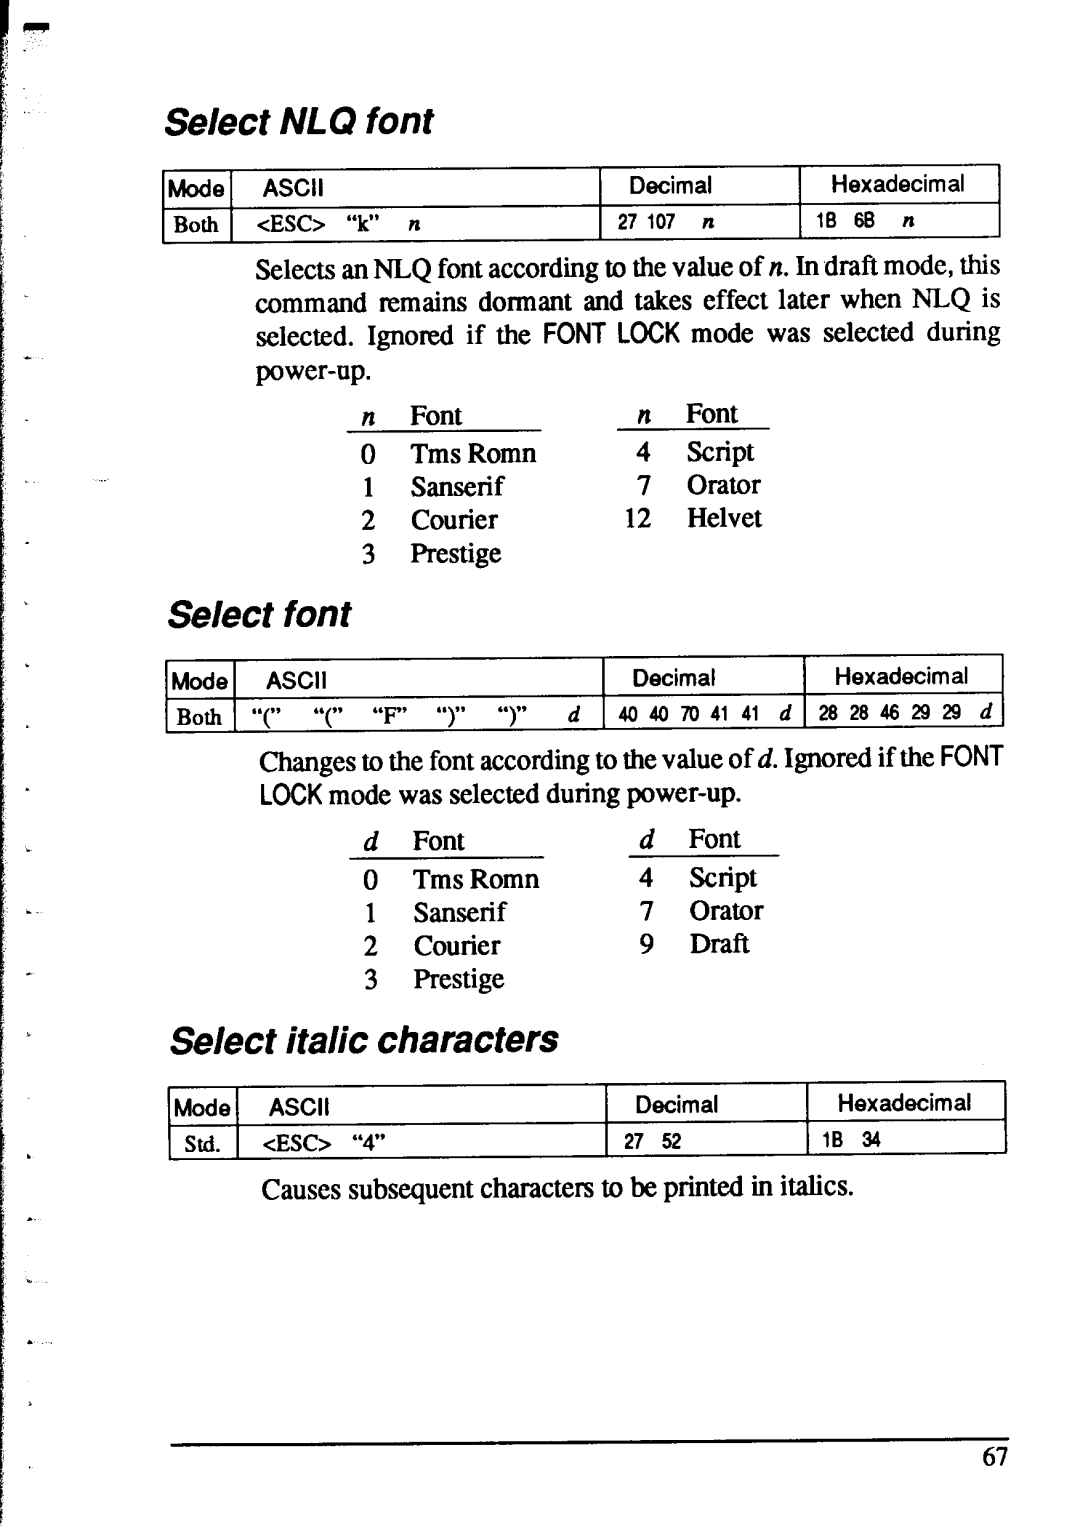 Star Micronics XR-1520, XR-1020 manual Se/ect NLQ font, Select font, Select italic characters, cESC7 “lc” n 